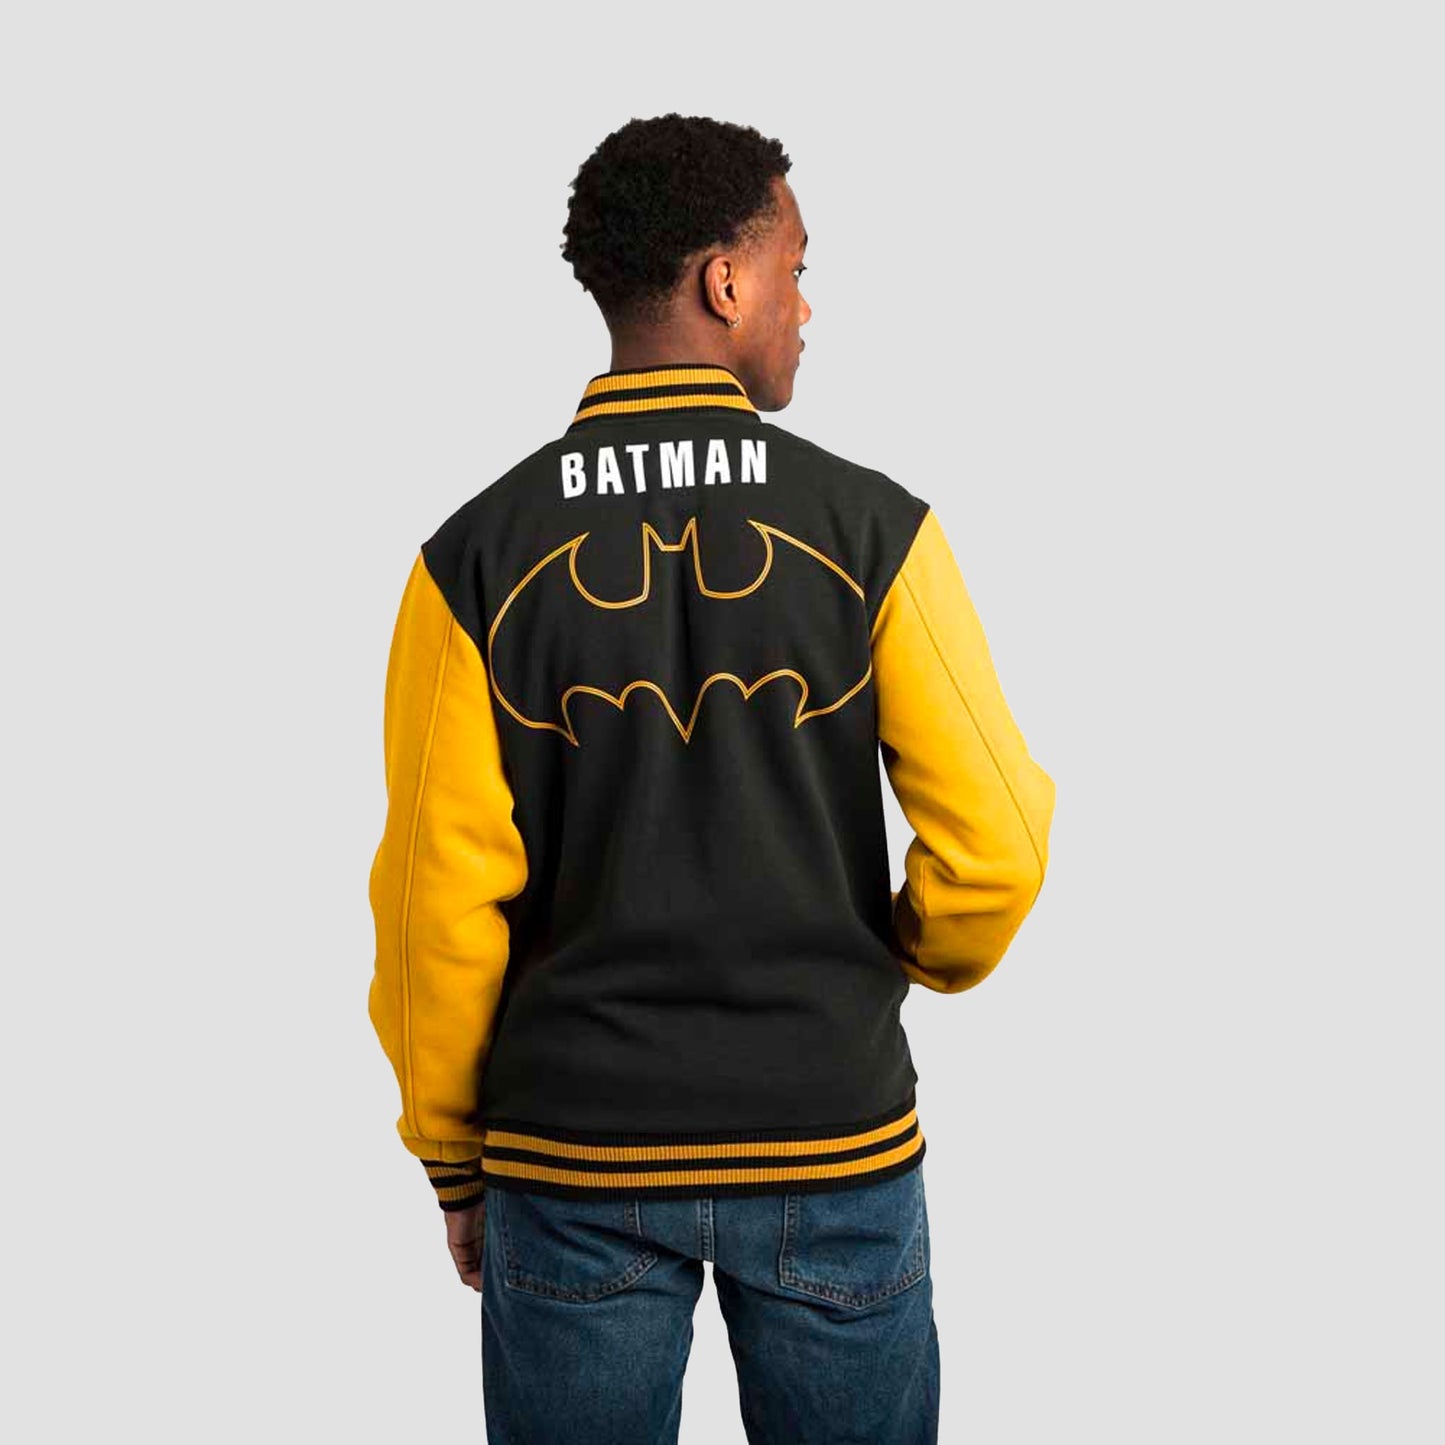 GUESS Originals Batman Varsity Jacket - Size Medium - New with Tags! [DC  Comics] | eBay